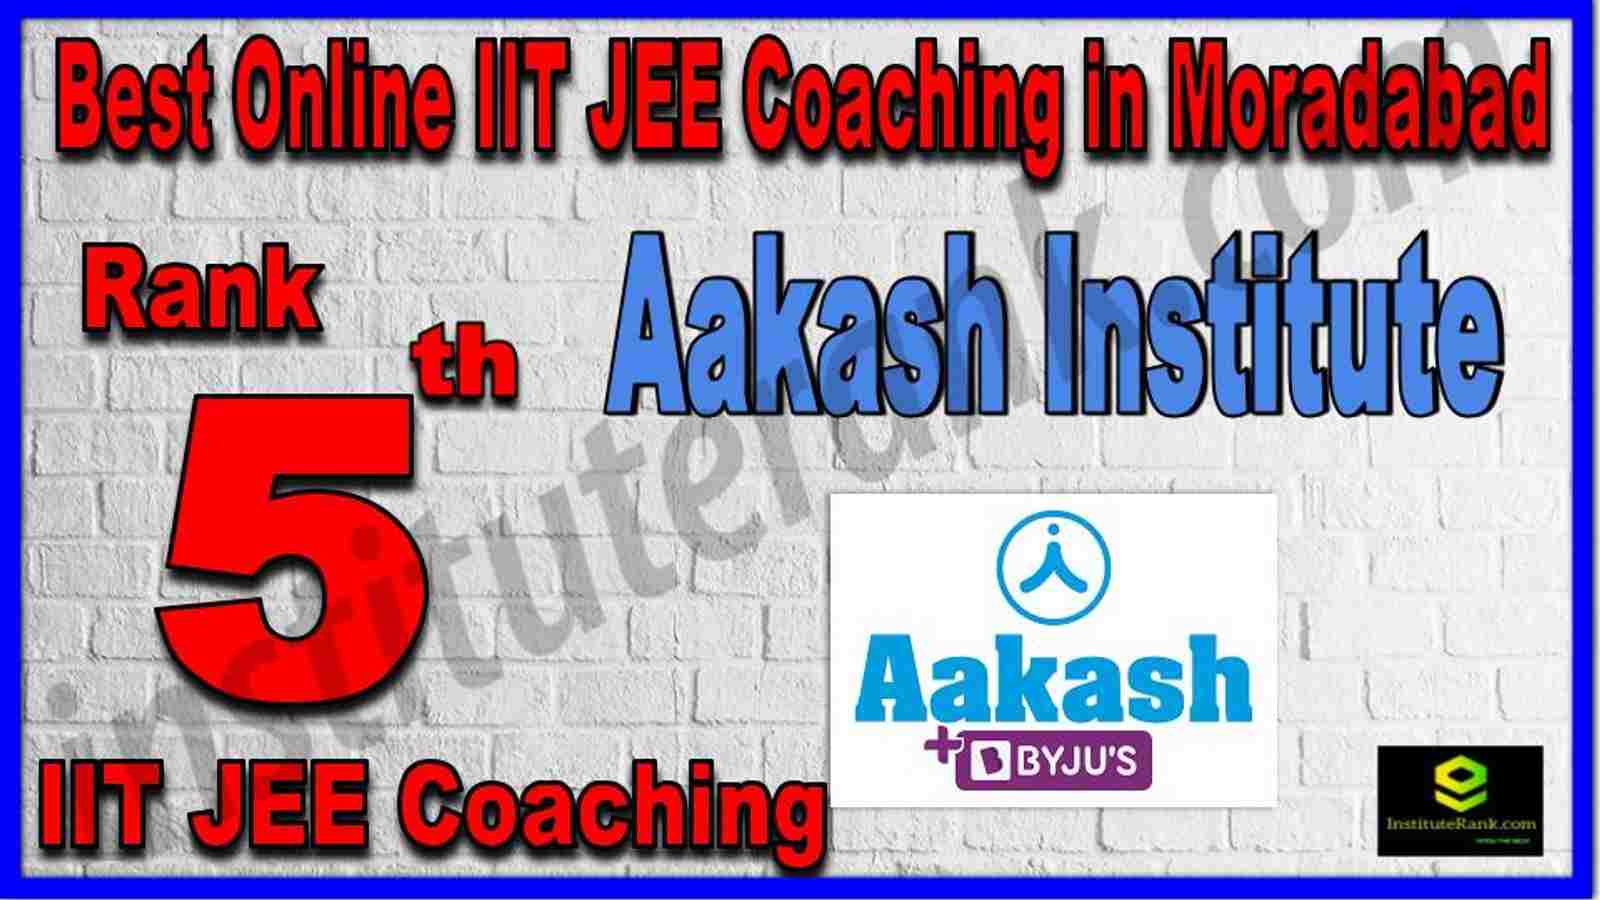 Rank 5th Best Online IIT JEE Coaching in Moradabad